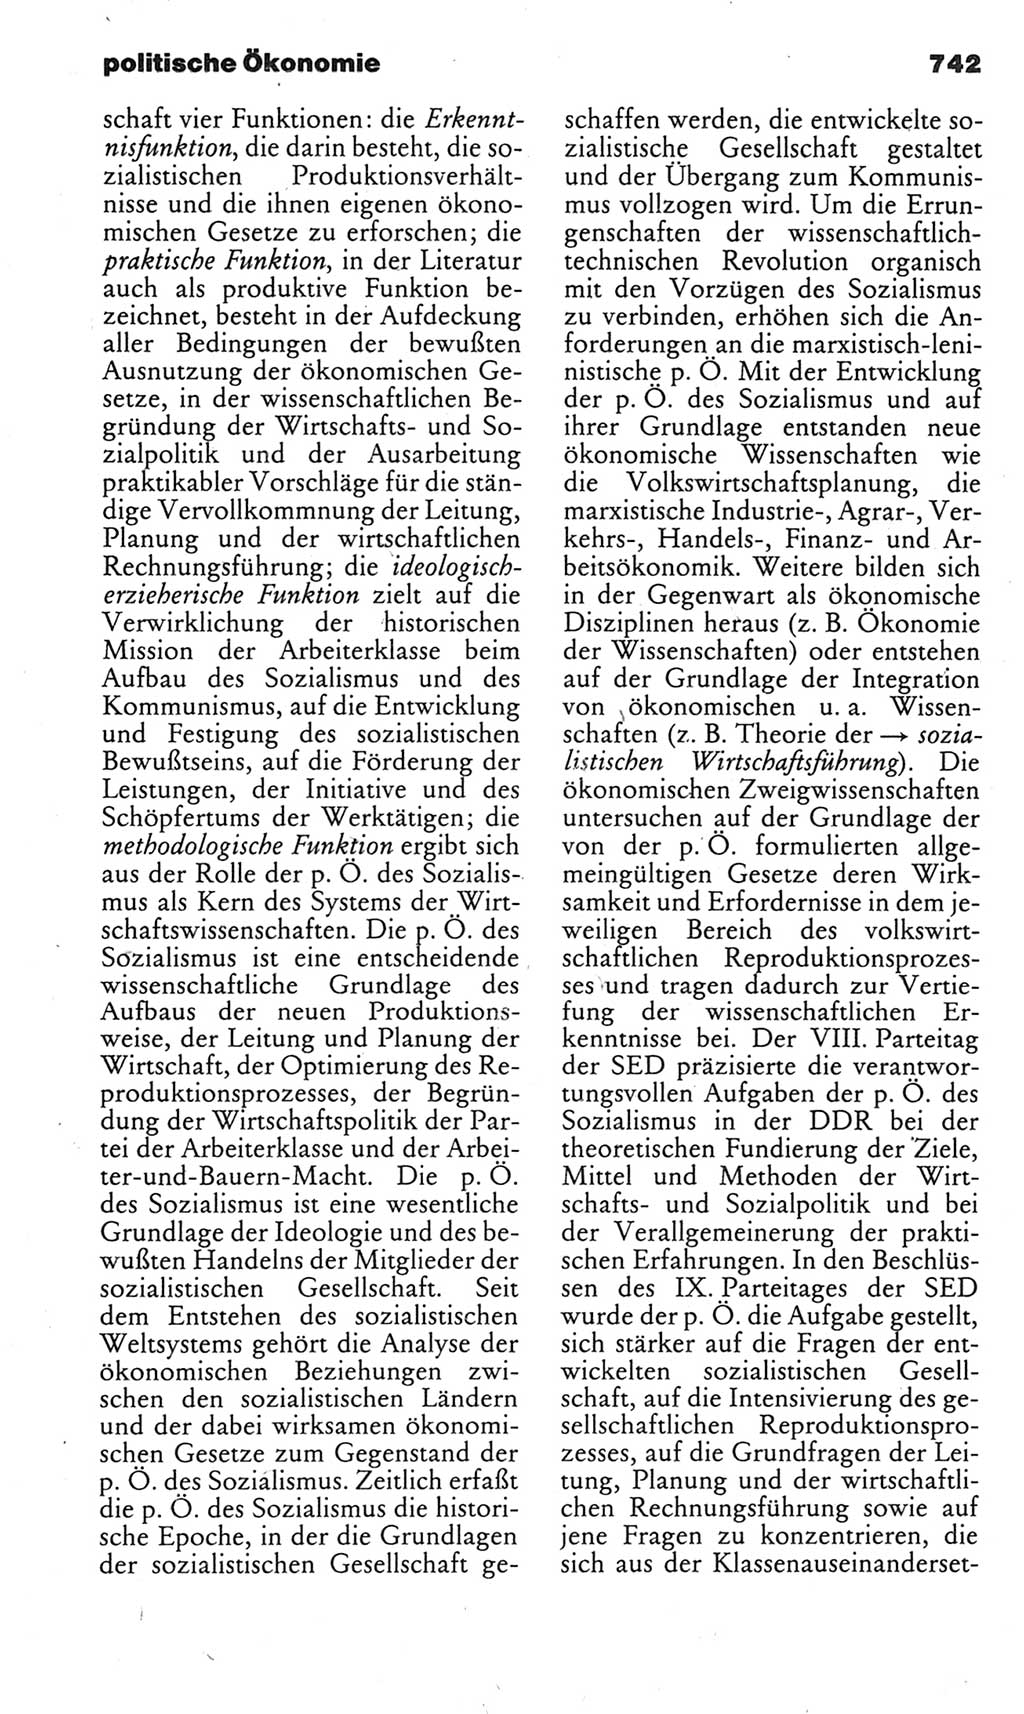 Kleines politisches Wörterbuch [Deutsche Demokratische Republik (DDR)] 1983, Seite 742 (Kl. pol. Wb. DDR 1983, S. 742)